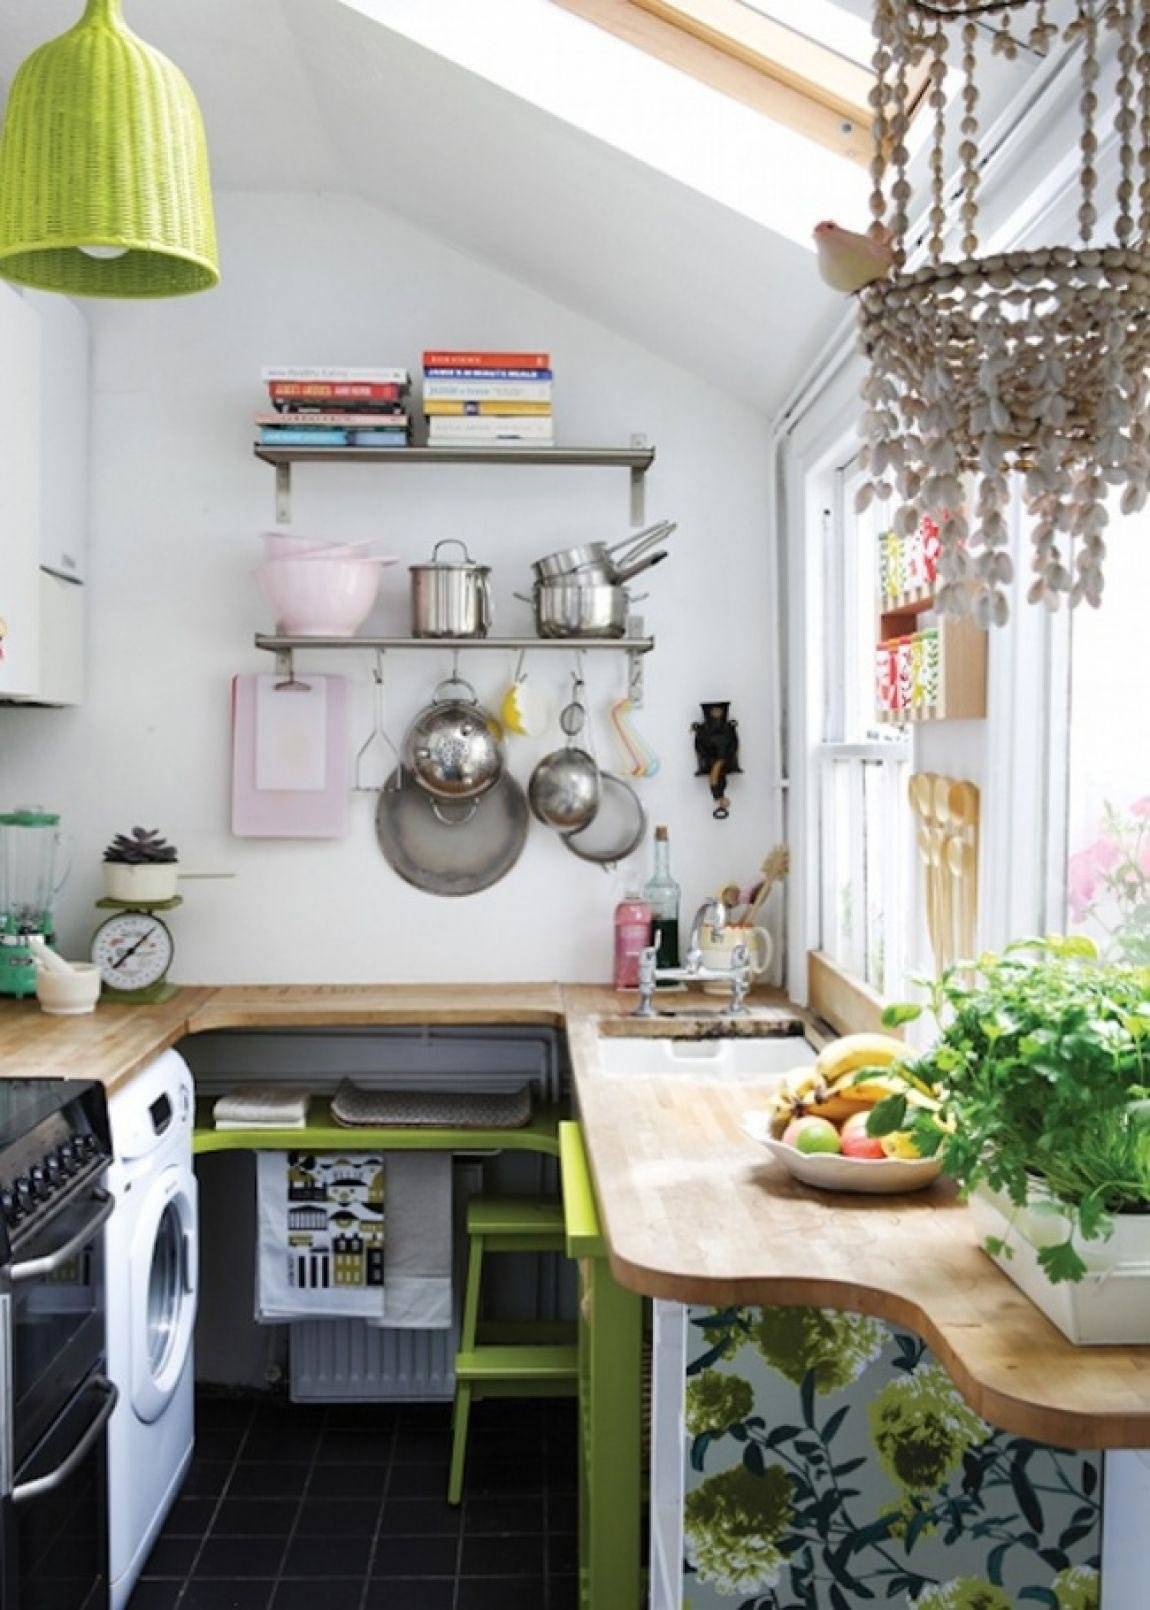 Дизайн маленькой кухни - 100 фото интерьеров, идеи для ремонта и отделки малогабаритной кухни